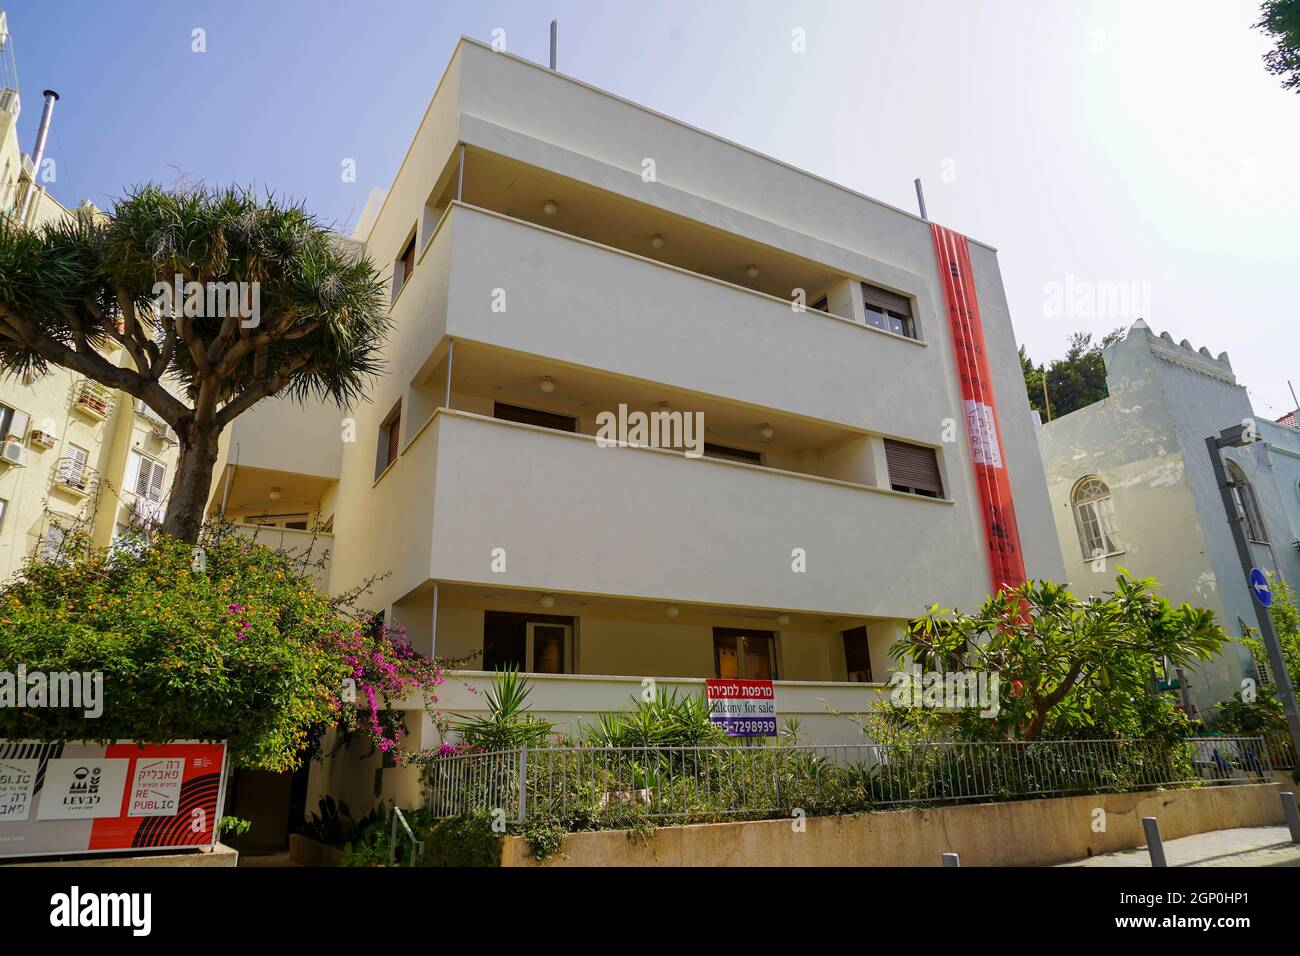 29, rue Idelson, tel Aviv la maison de Lieubling - le centre de la ville Blanche a été co-fondé par la municipalité de tel Aviv-Yafo et le gouvernement allemand en a Banque D'Images